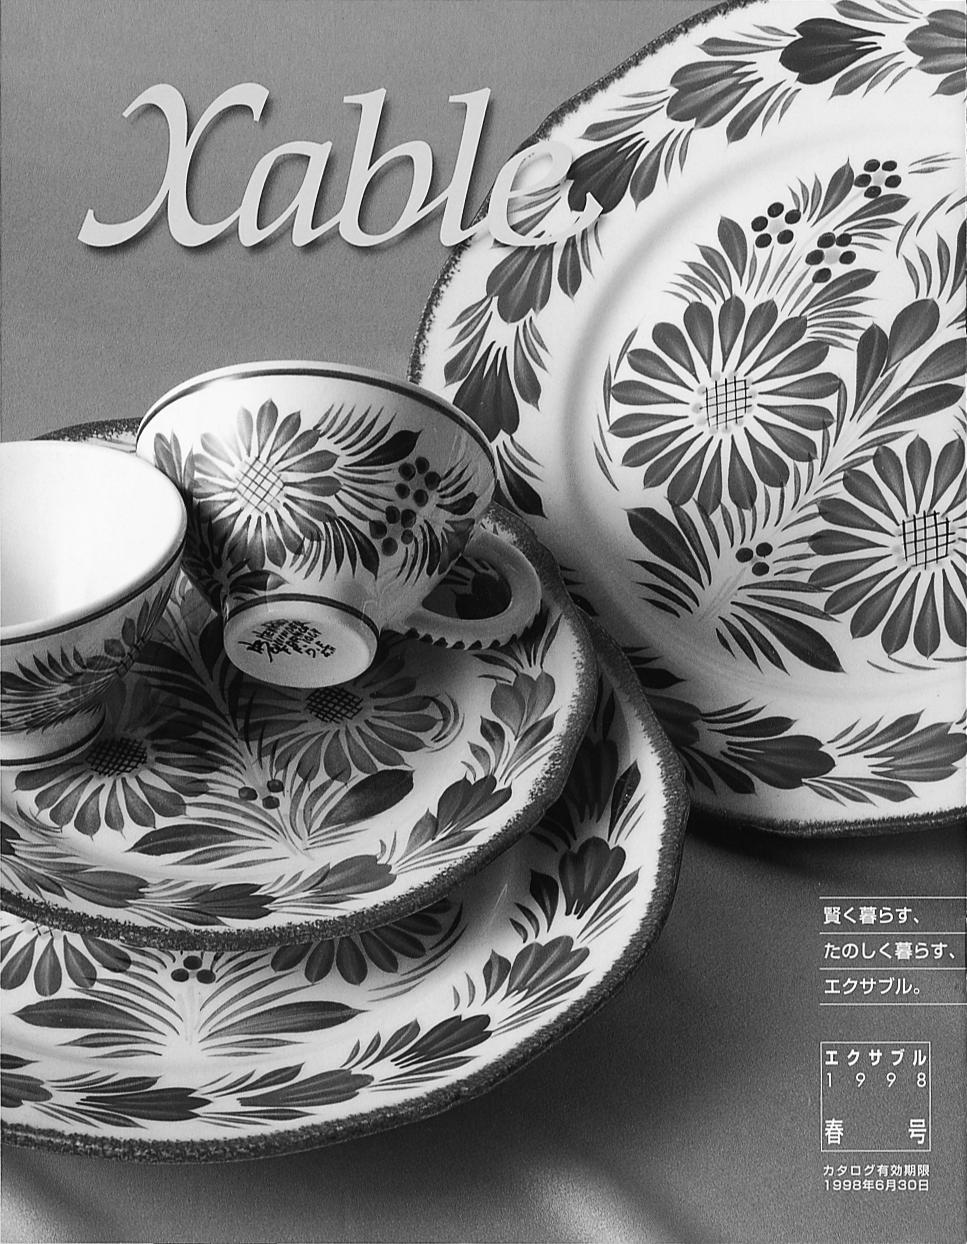 現在配布中の『Xable』98年春号。高感度の商品がゆったりと配置されている